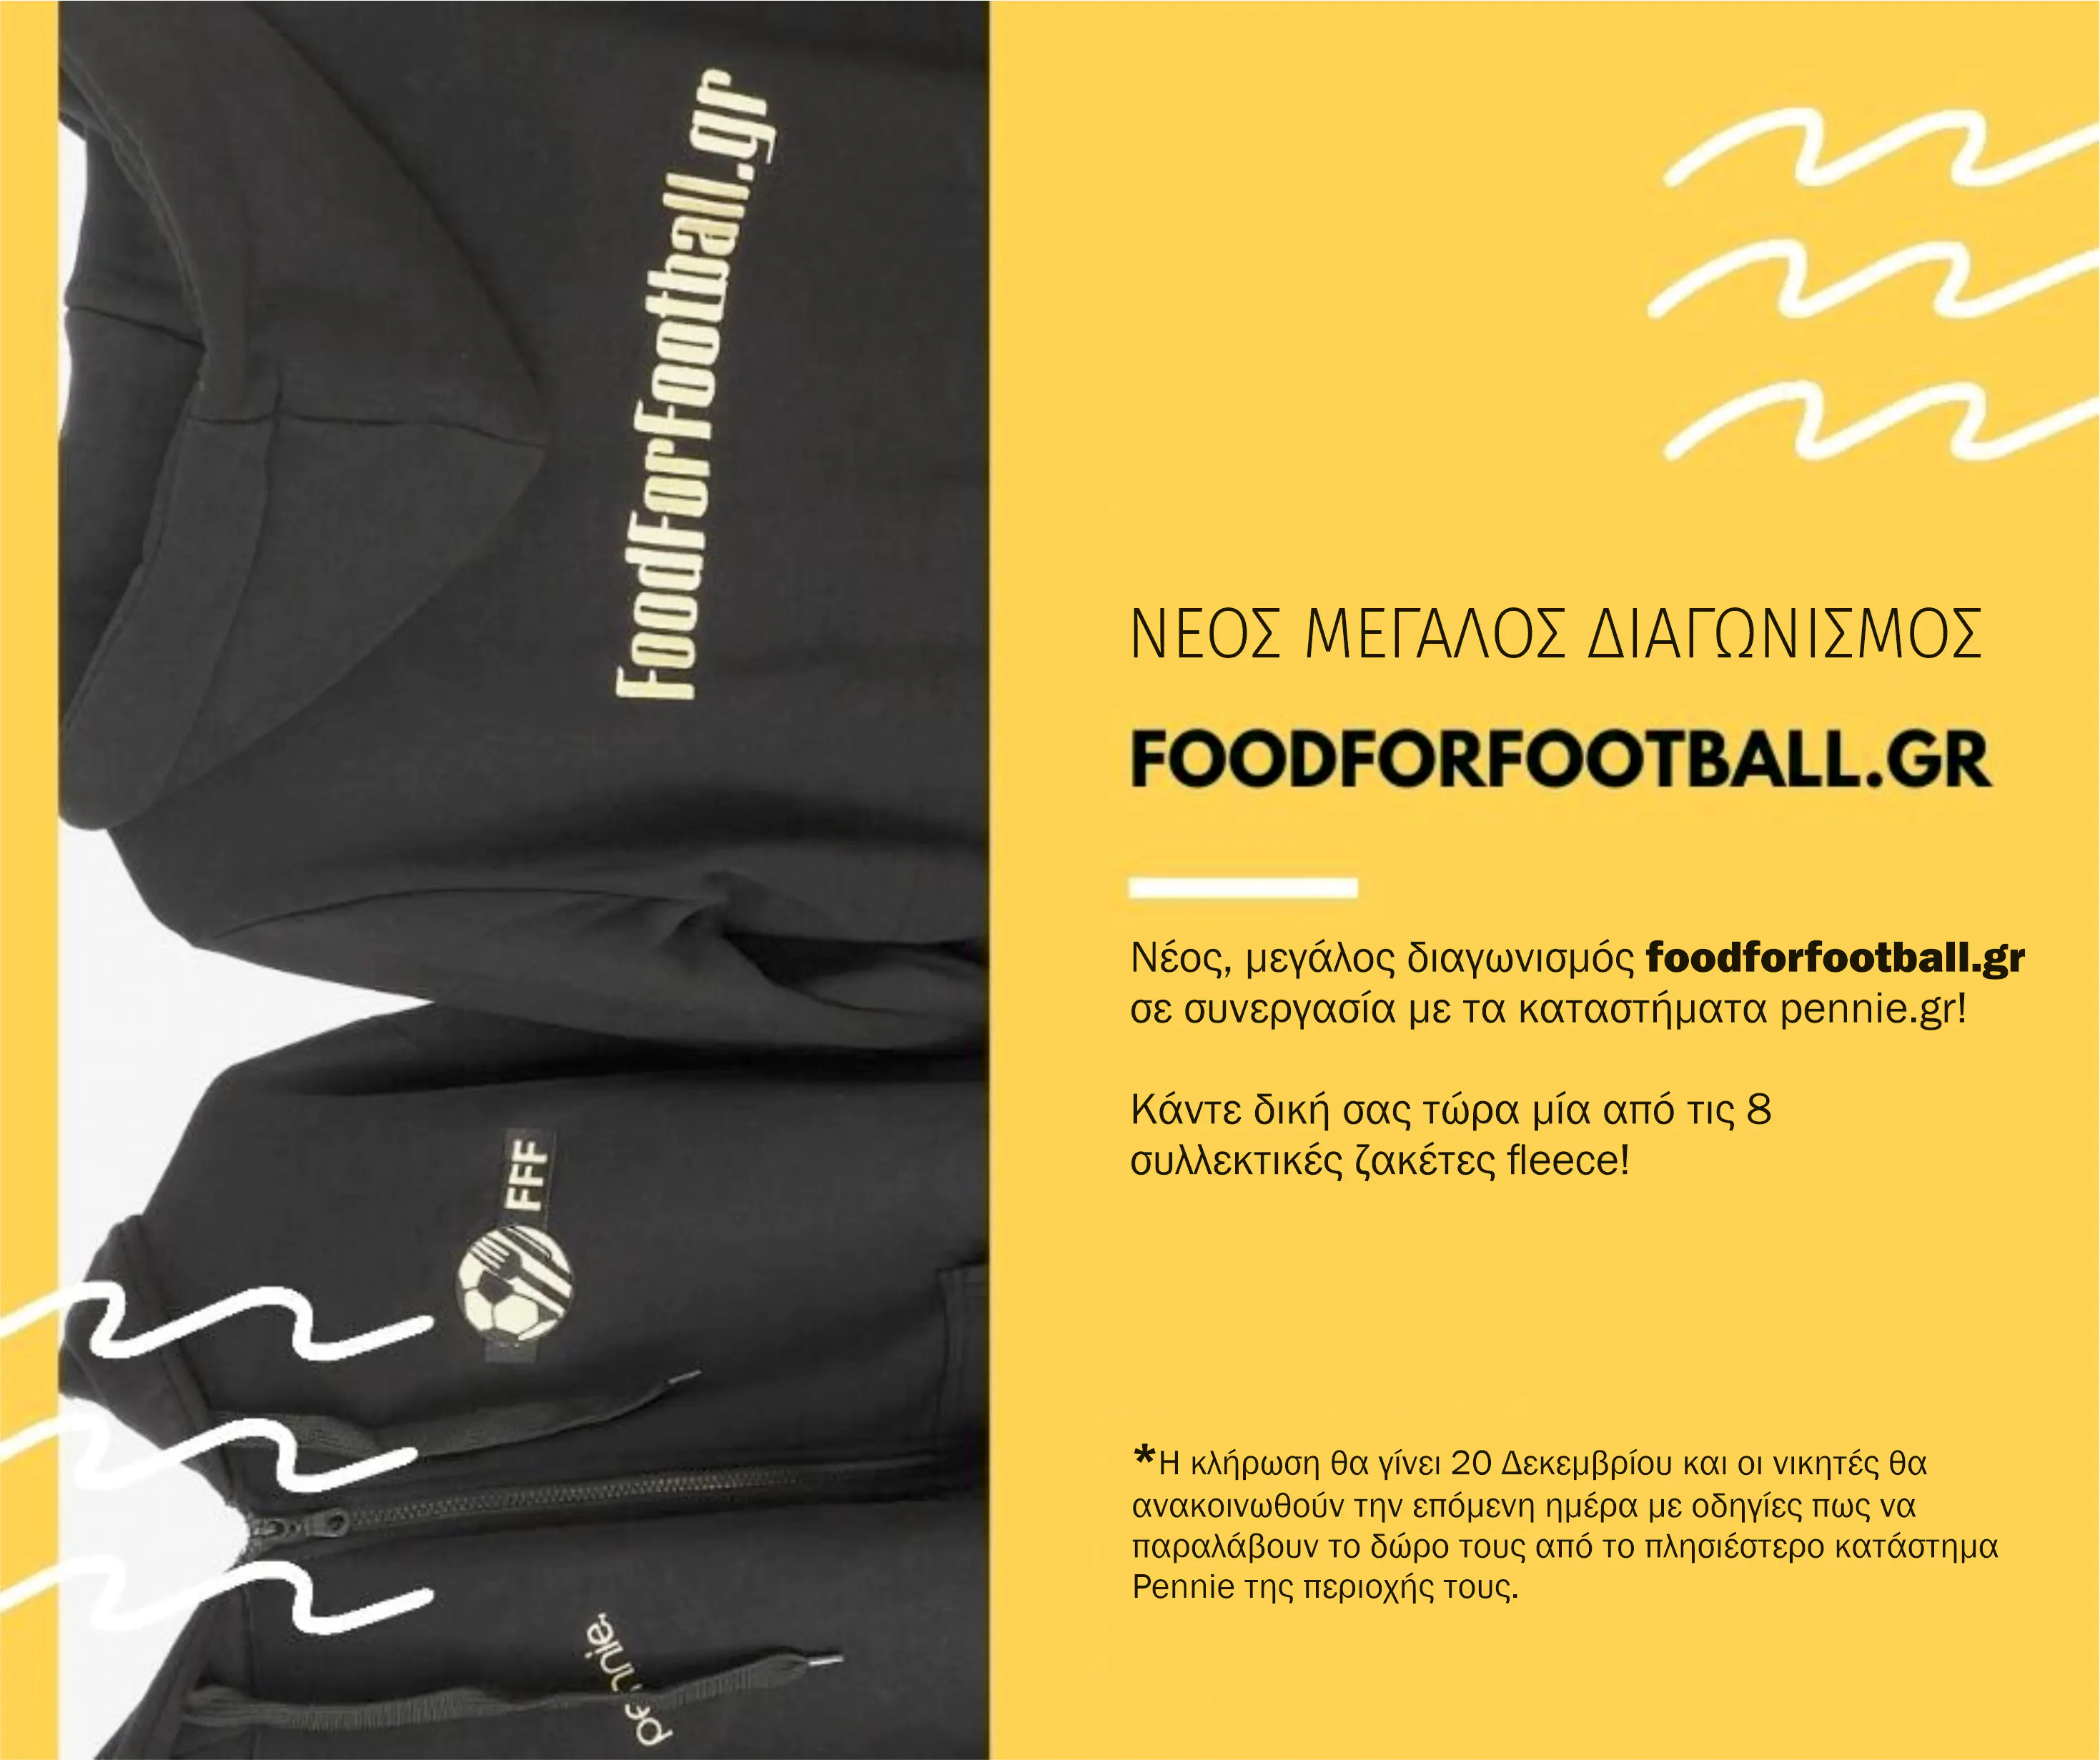 Νέος, μεγάλος διαγωνισμός foodforfootball.gr